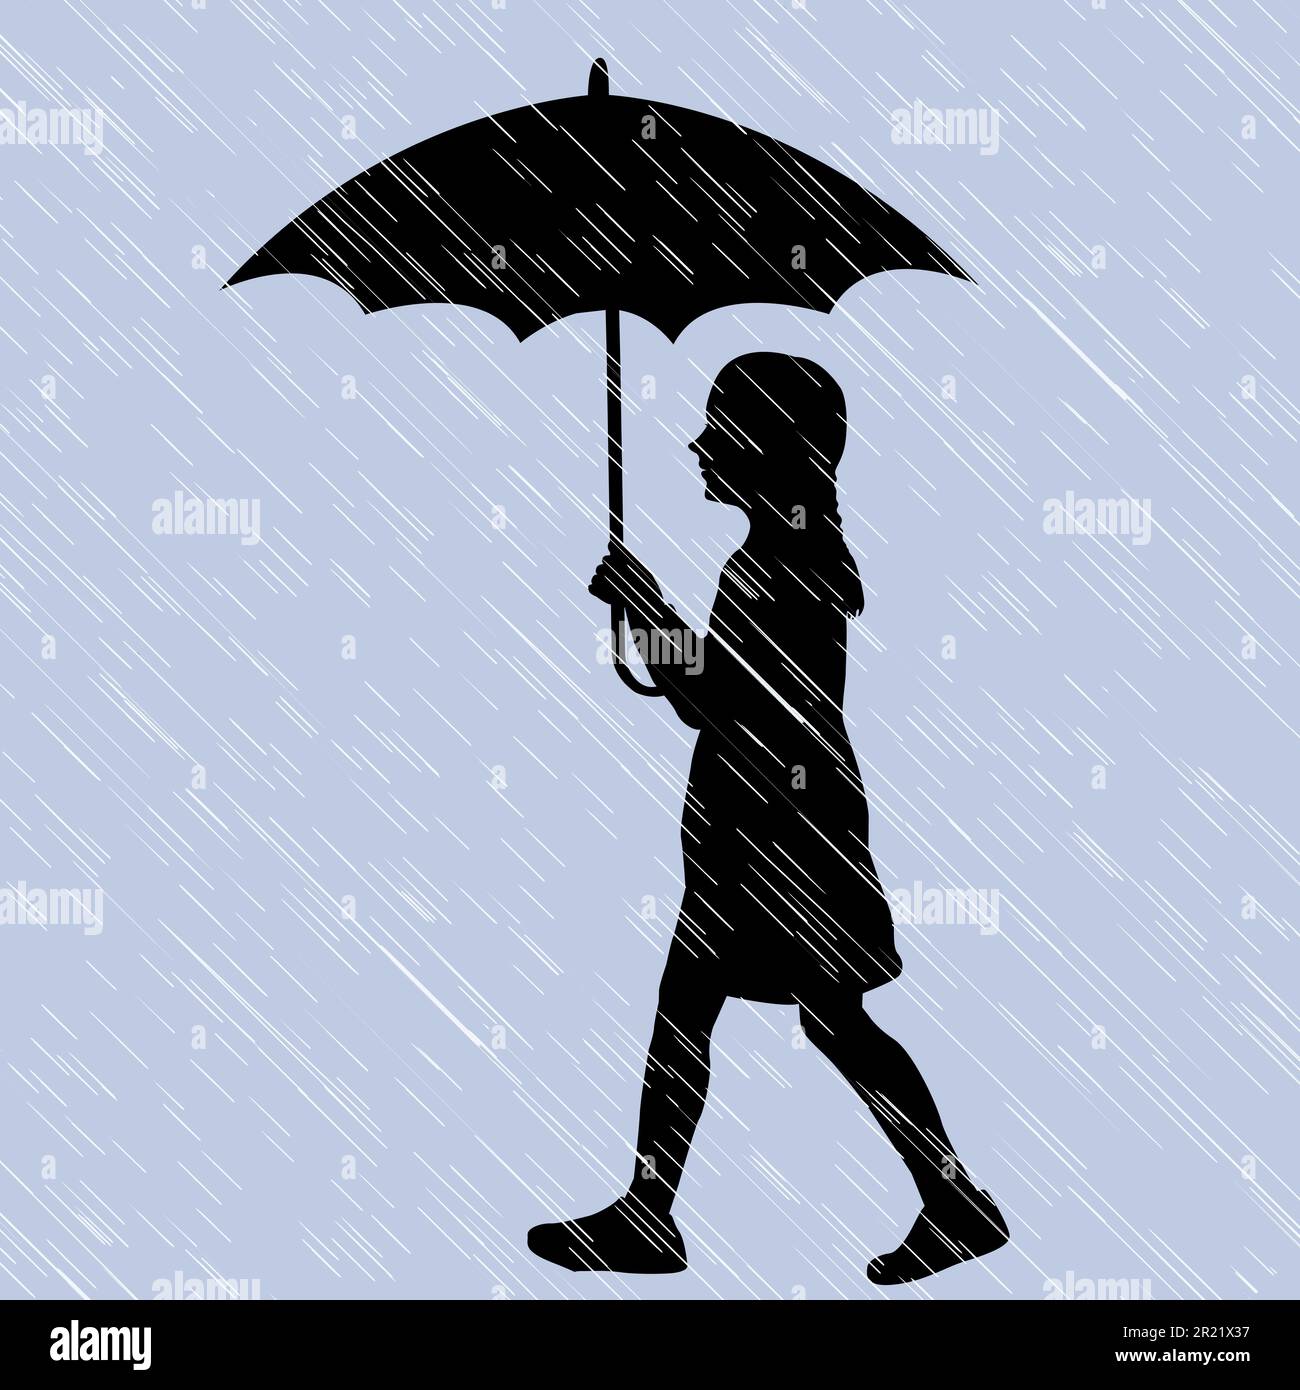 Silhouette of a girl walking through the rain with an umbrella Stock Vector